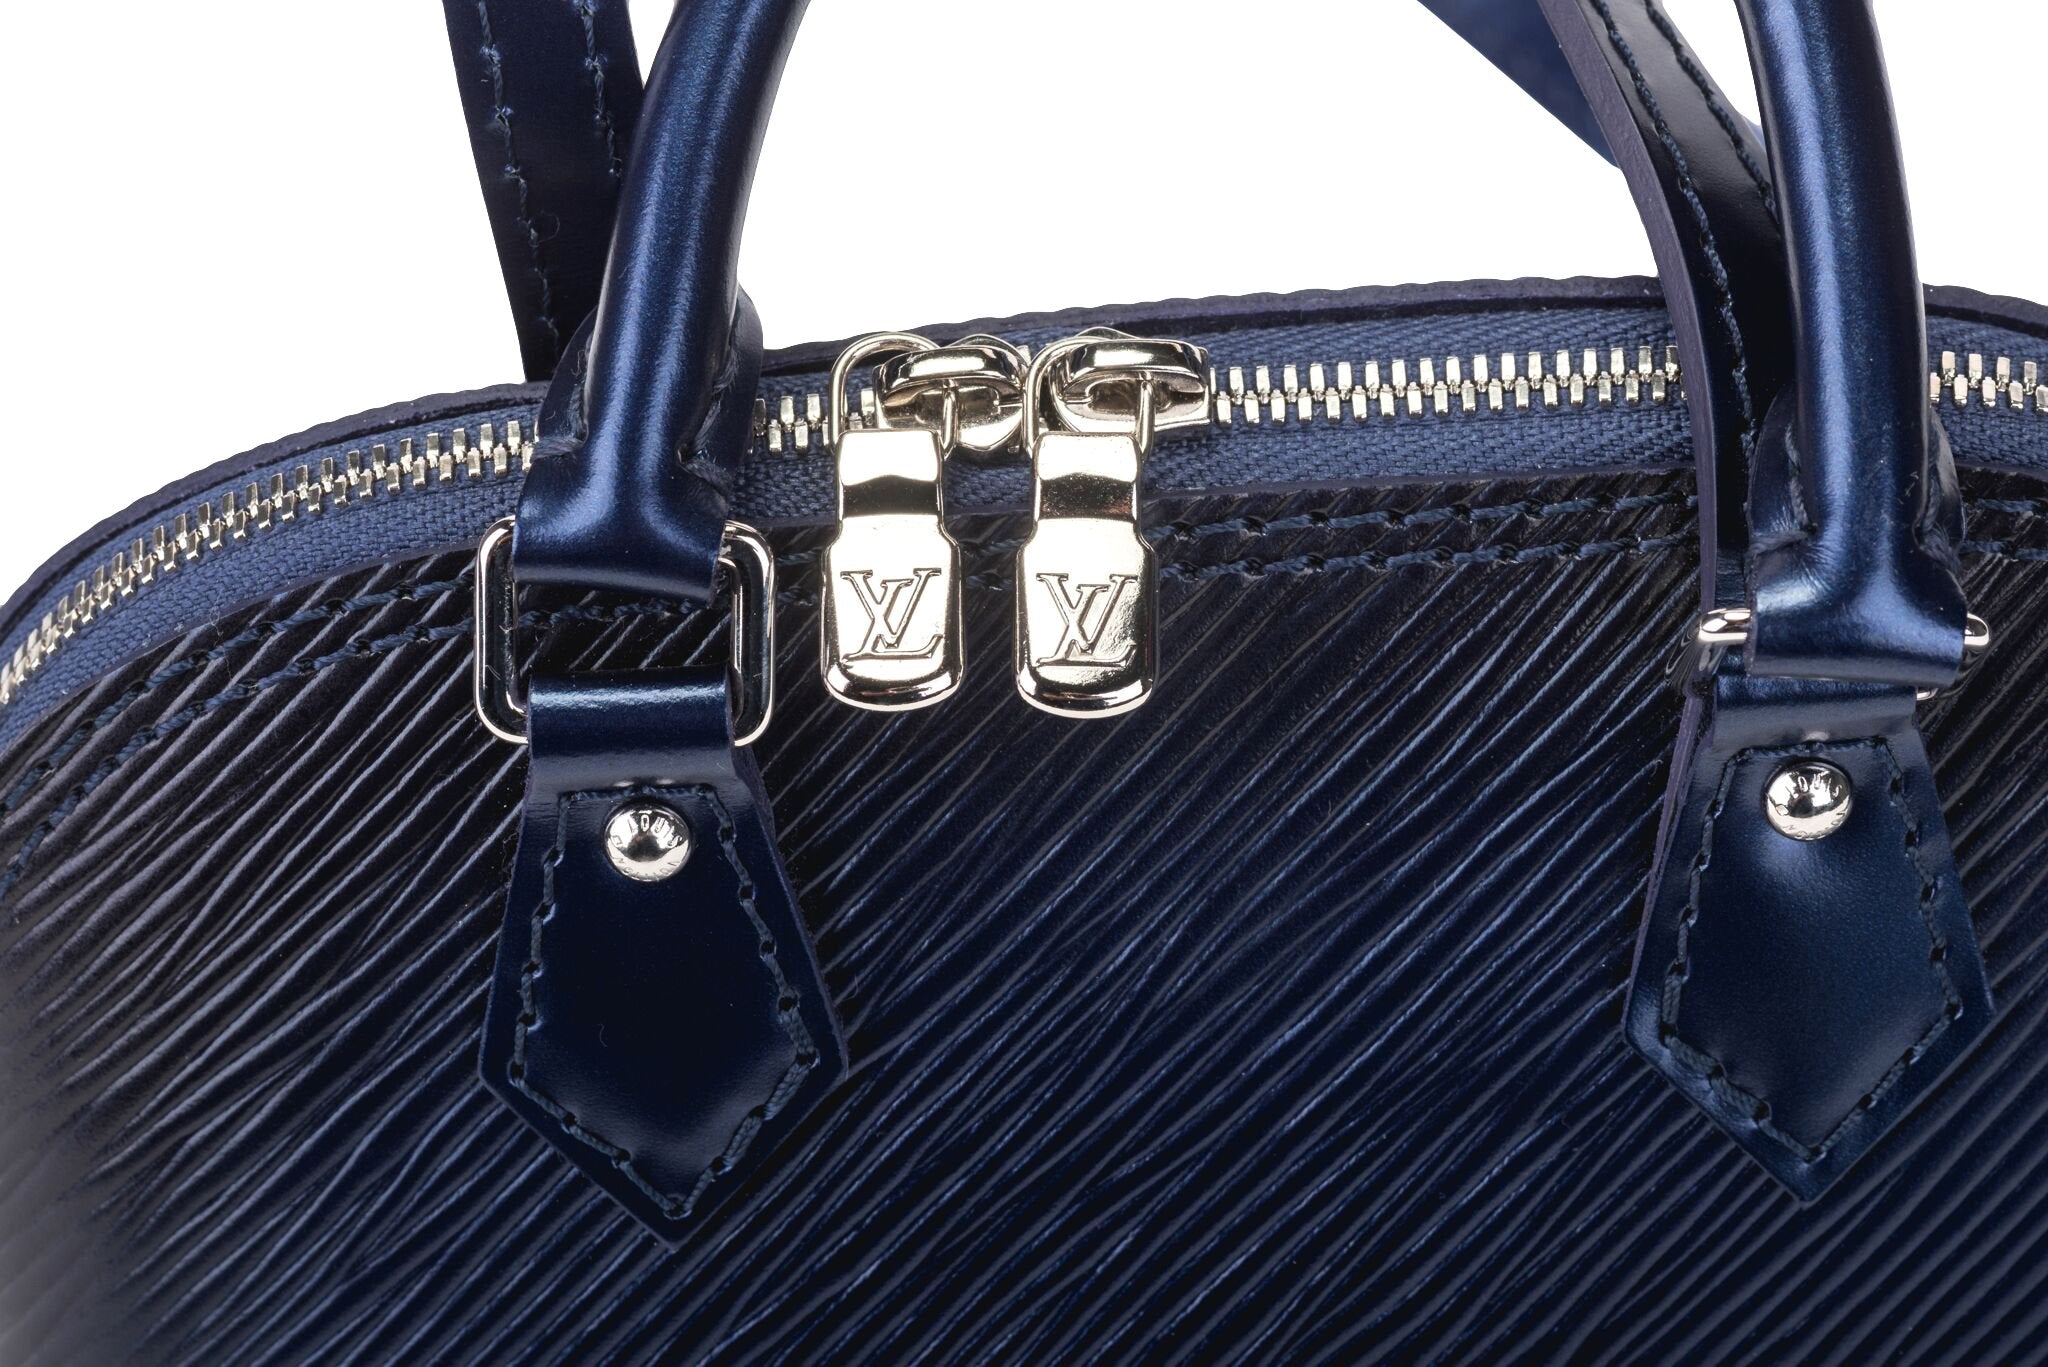 Louis Vuitton Alma Epi Nano Denim in Epi Leather with Silver-tone - US